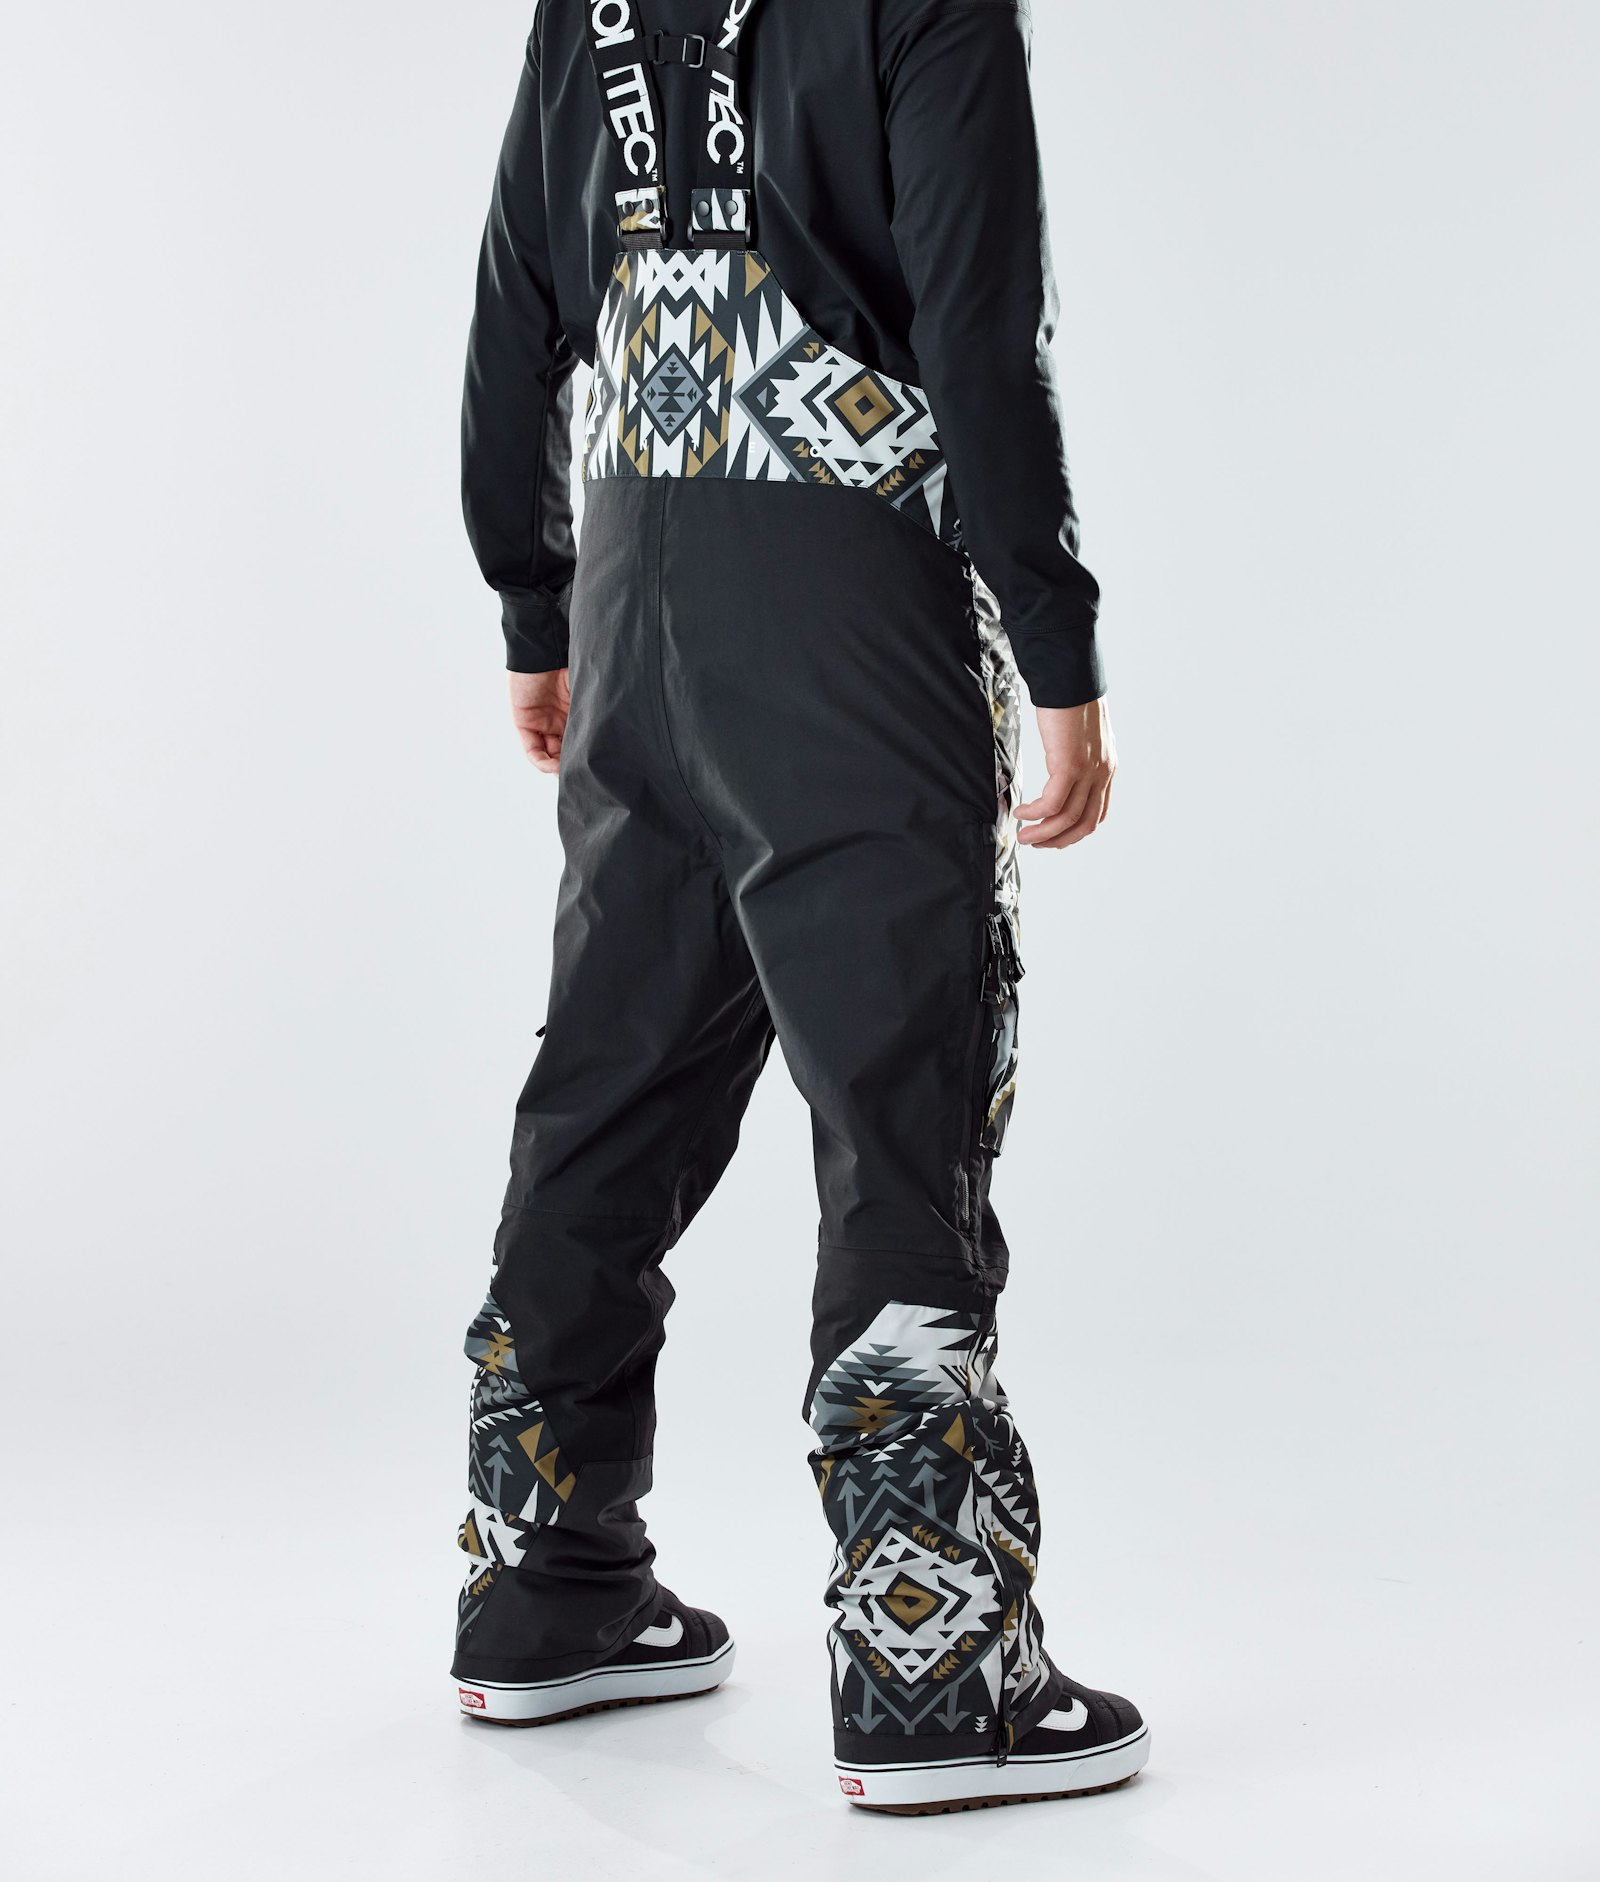 Montec Fawk 2020 Spodnie Snowboardowe Mężczyźni Komber Gold/Black